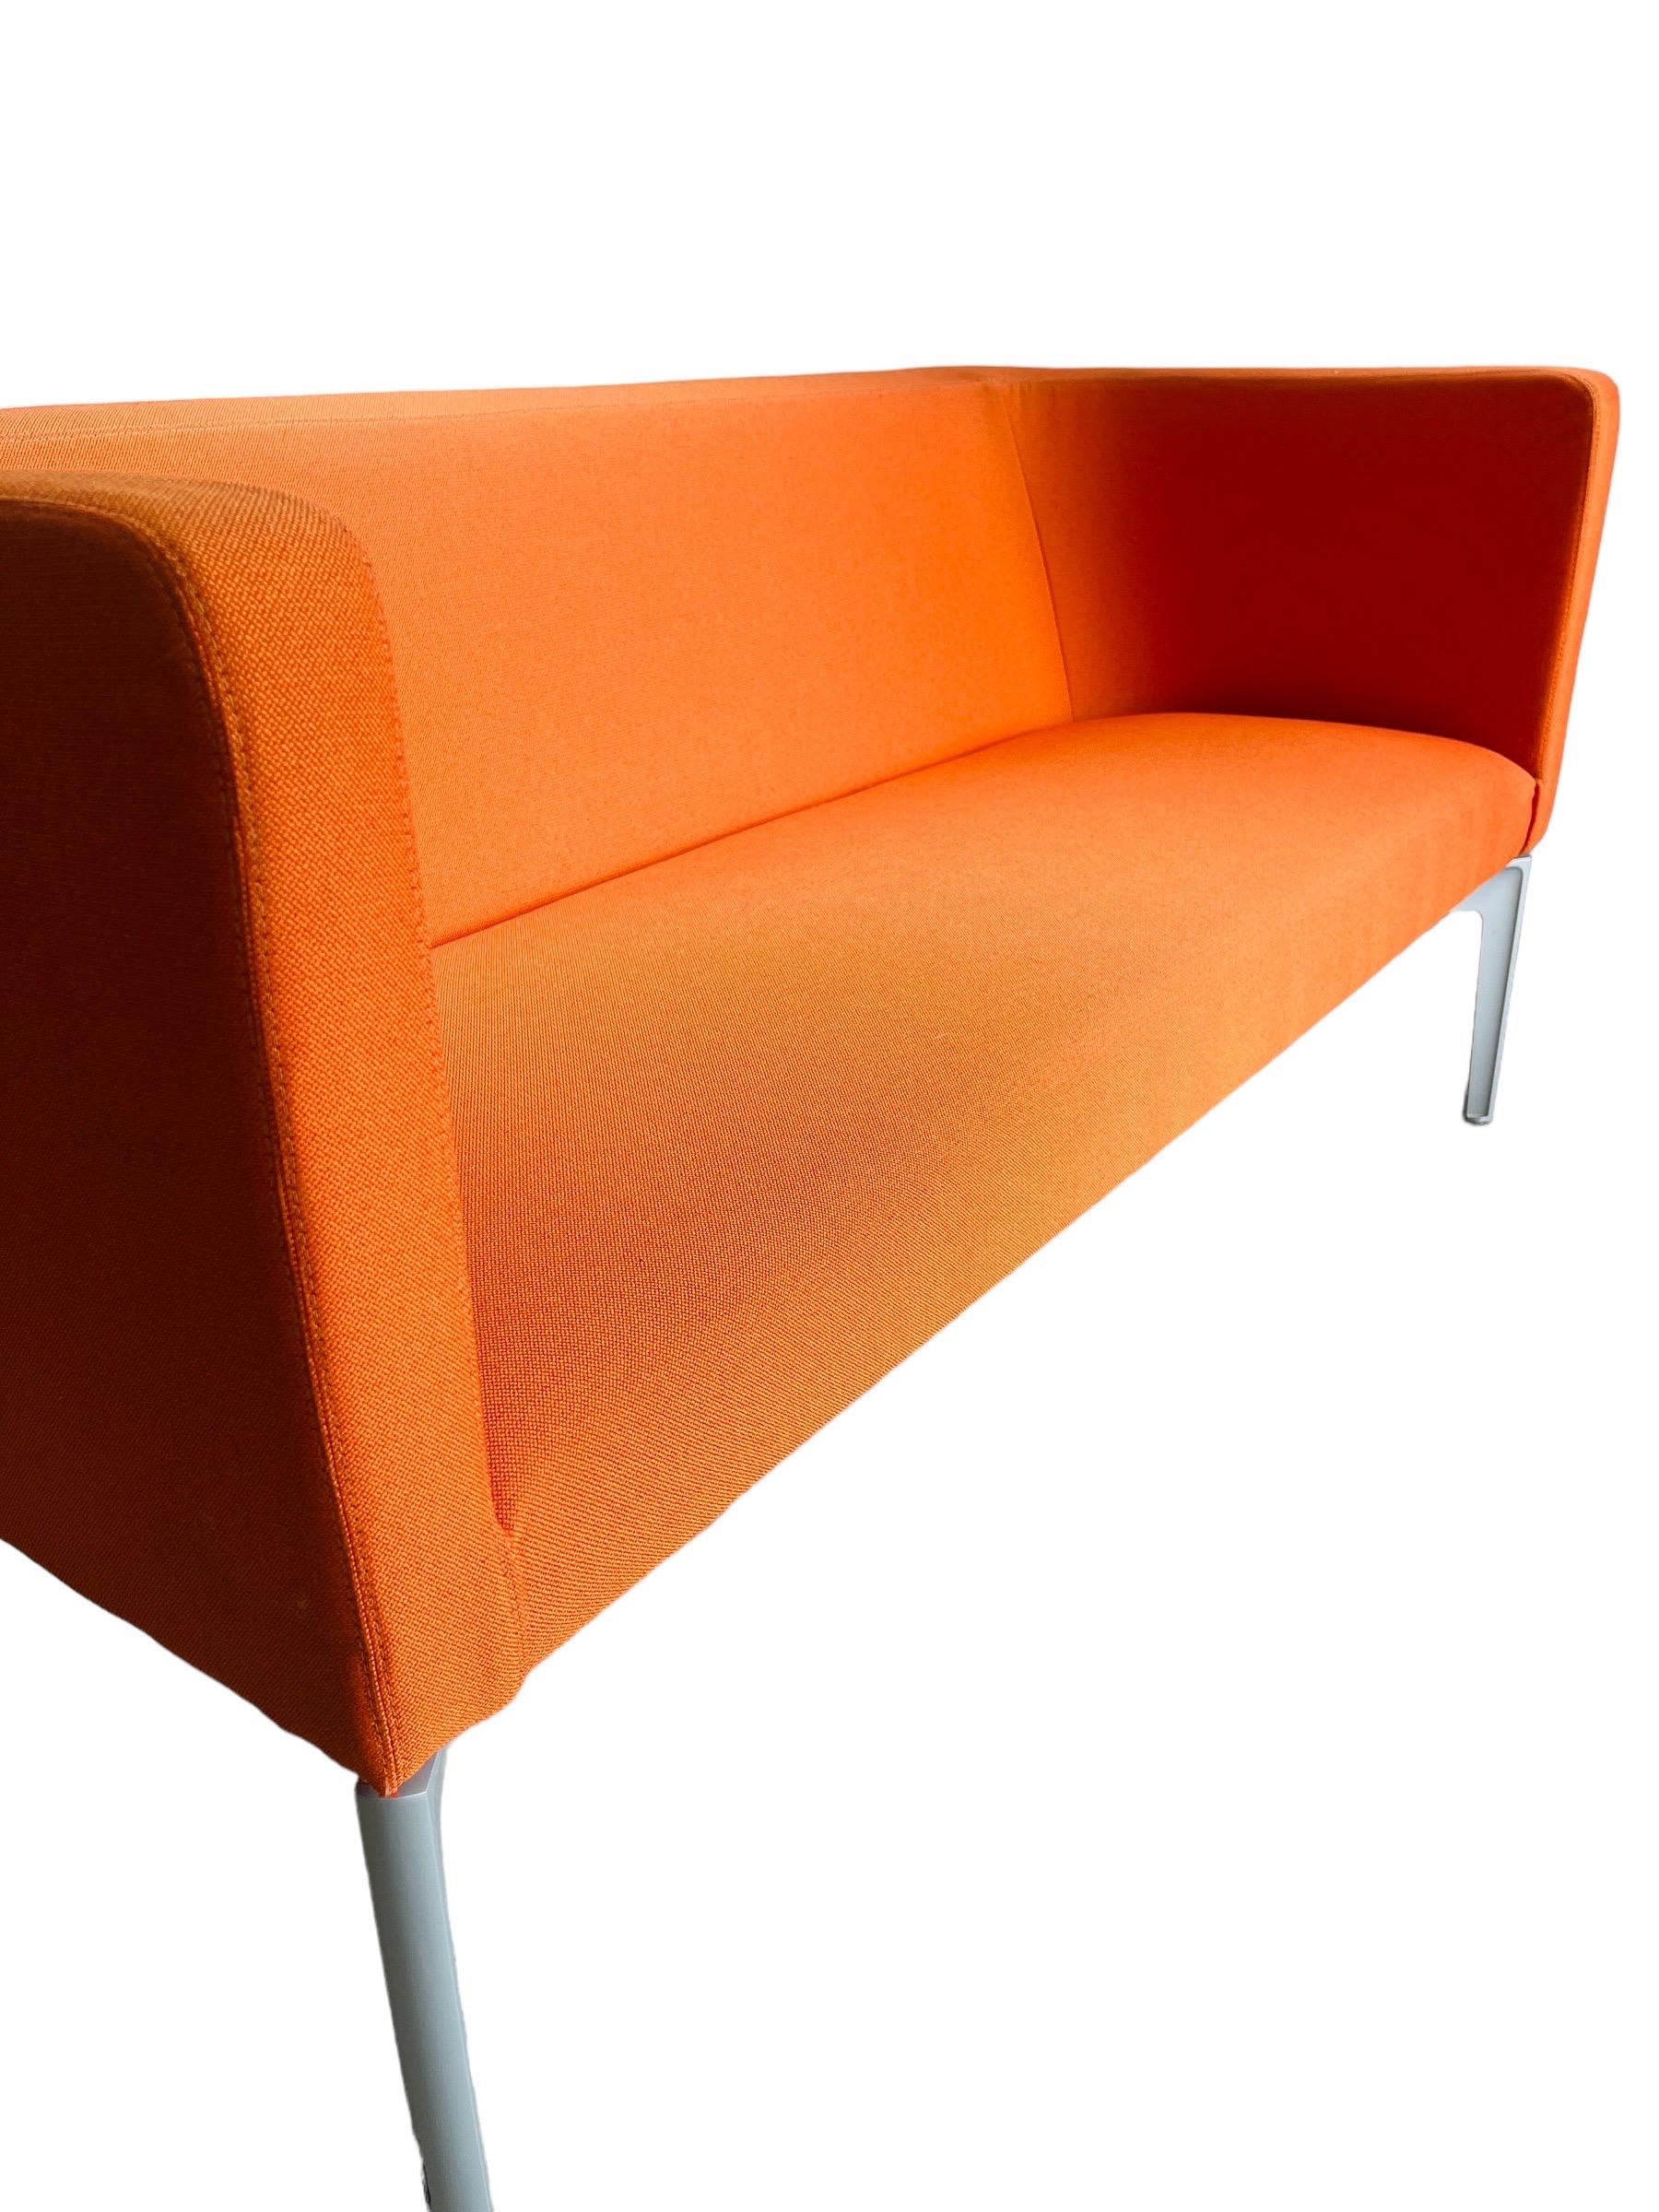 Mit dem Steelcase Bivi Rumble Seat Collection'S Sofa verleihen Sie Ihrem Wohnbereich eine ganz besondere Note. Das in einem auffälligen Orangeton gepolsterte Sofa besticht nicht nur durch sein Design, sondern bietet auch robuste Funktionalität in